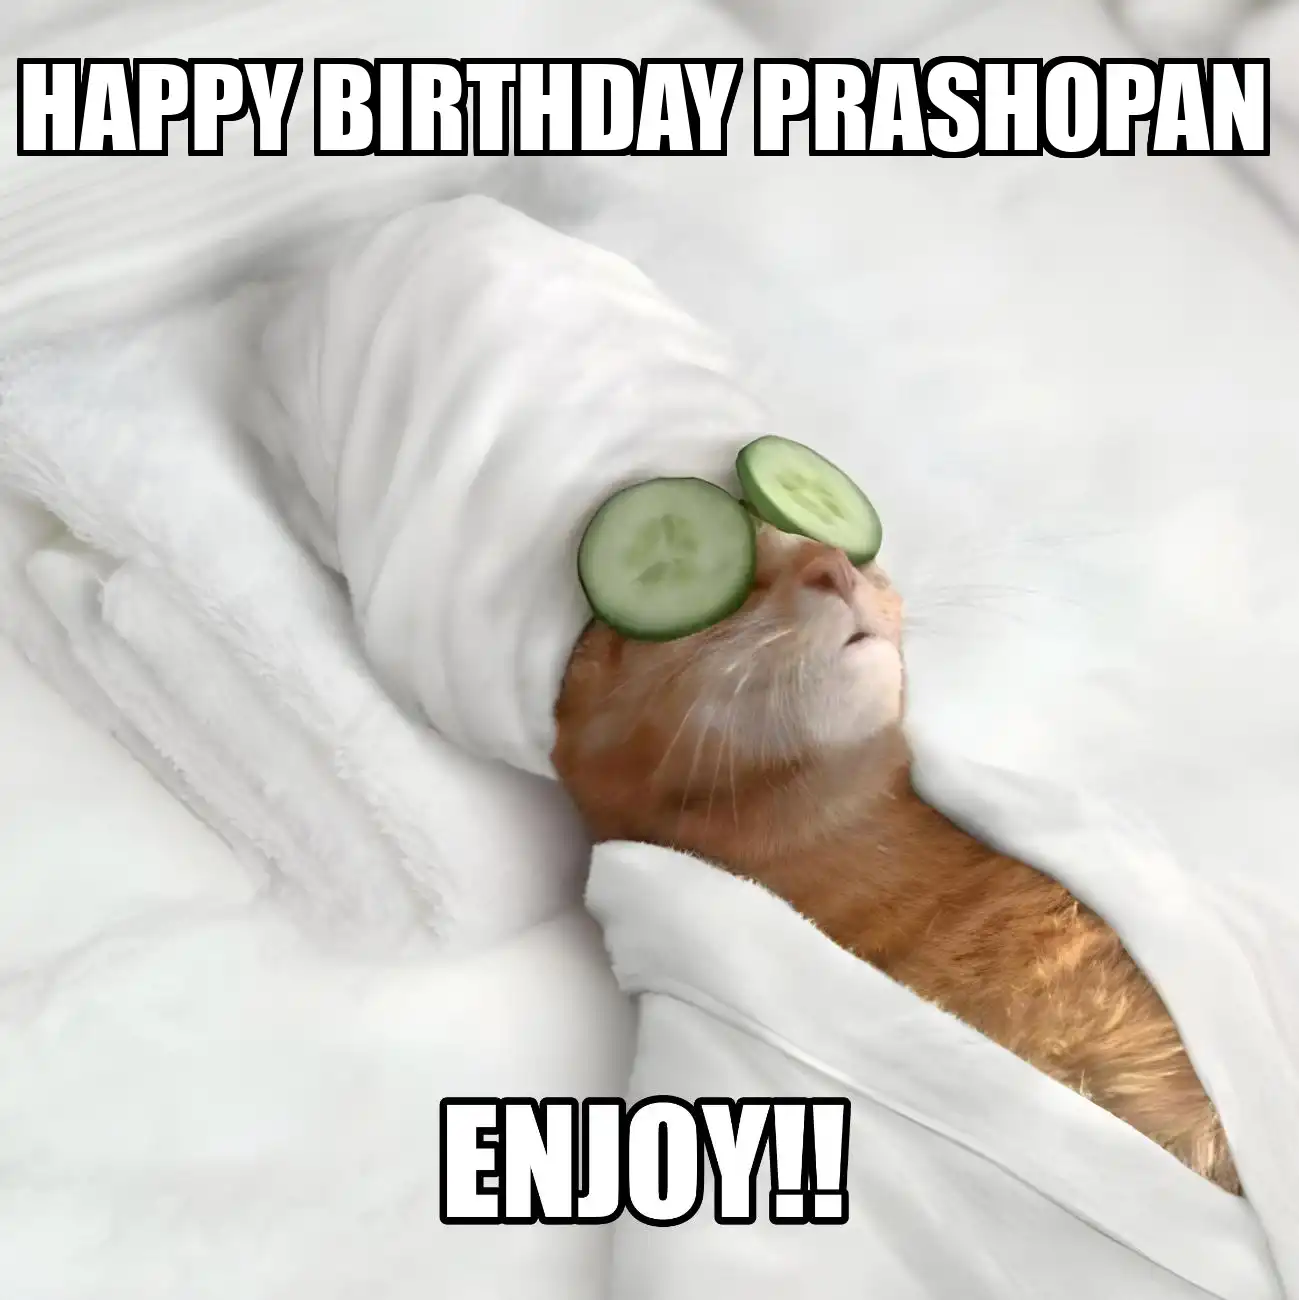 Happy Birthday Prashopan Enjoy Cat Meme